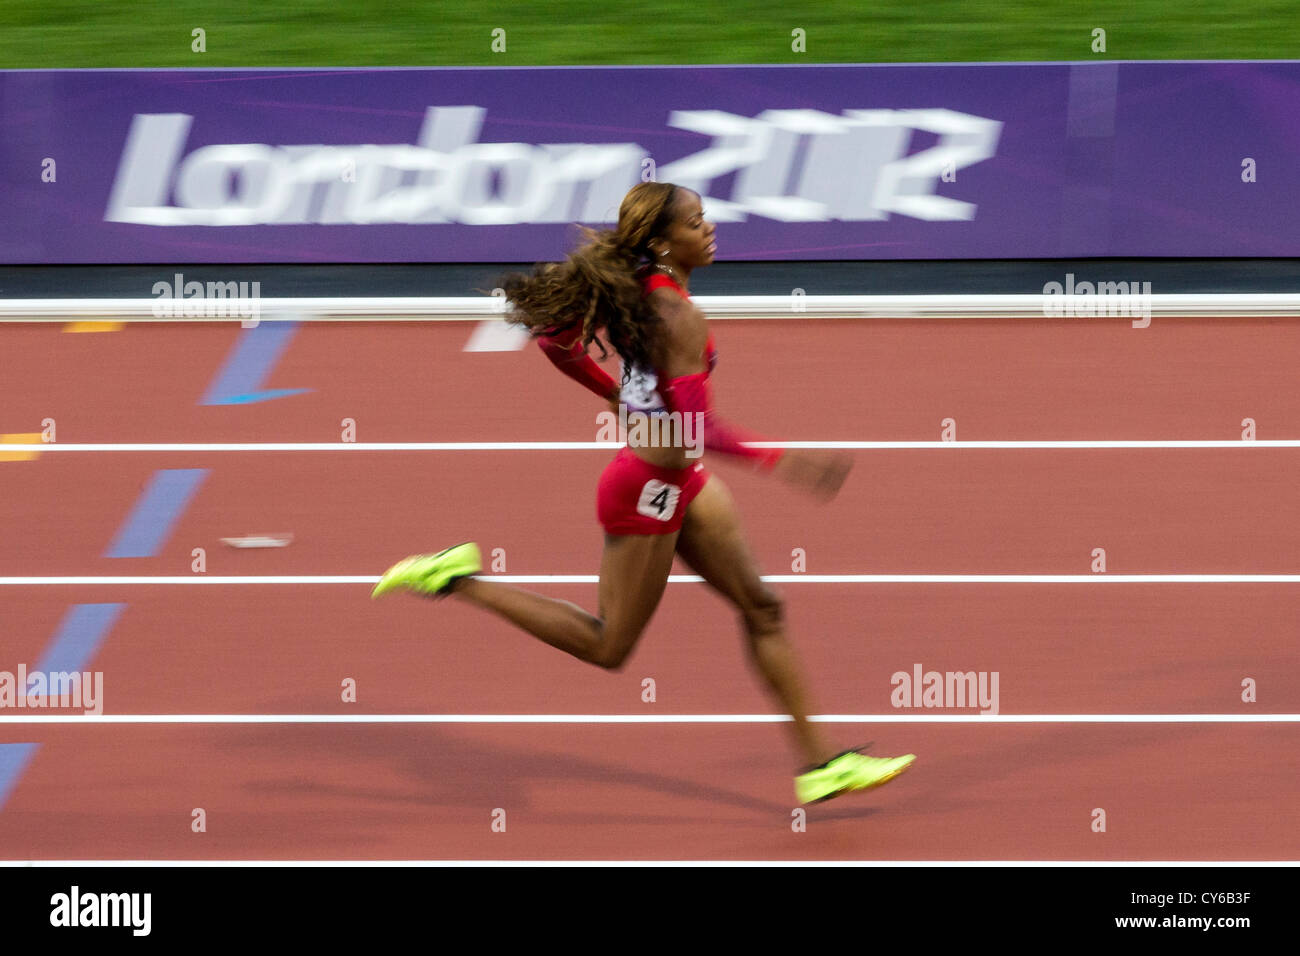 Sanya Richards-Ross compitiendo en la mujer semifinales de 400m en el verano de los Juegos Olímpicos de Londres 2012 Foto de stock